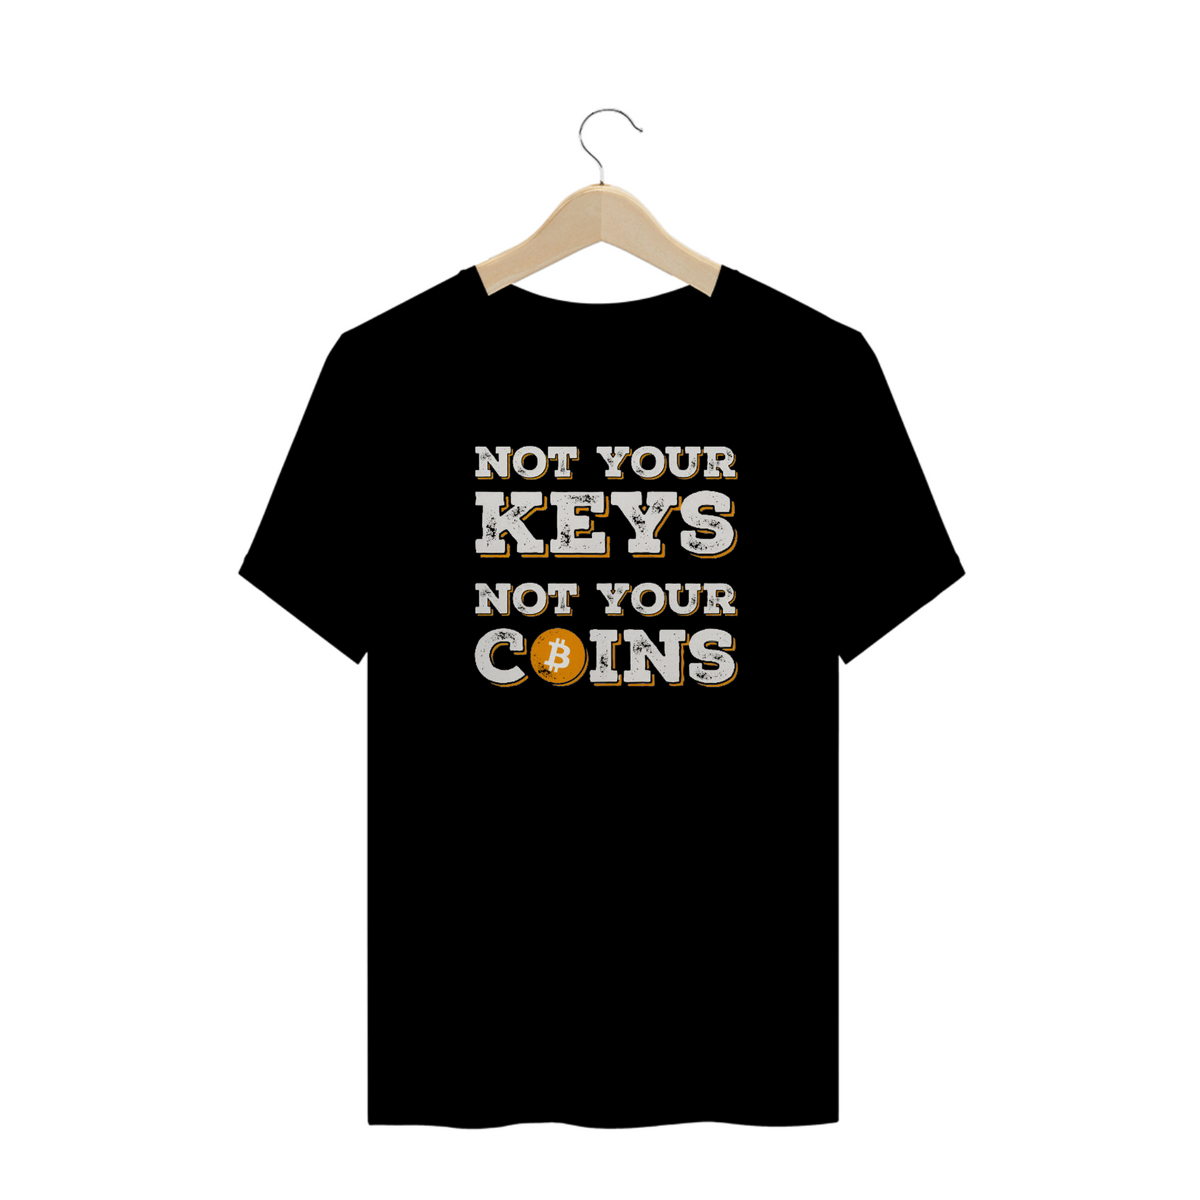 Nome do produto: Criptos - Camisa Not Your Keys - Not Your Coins